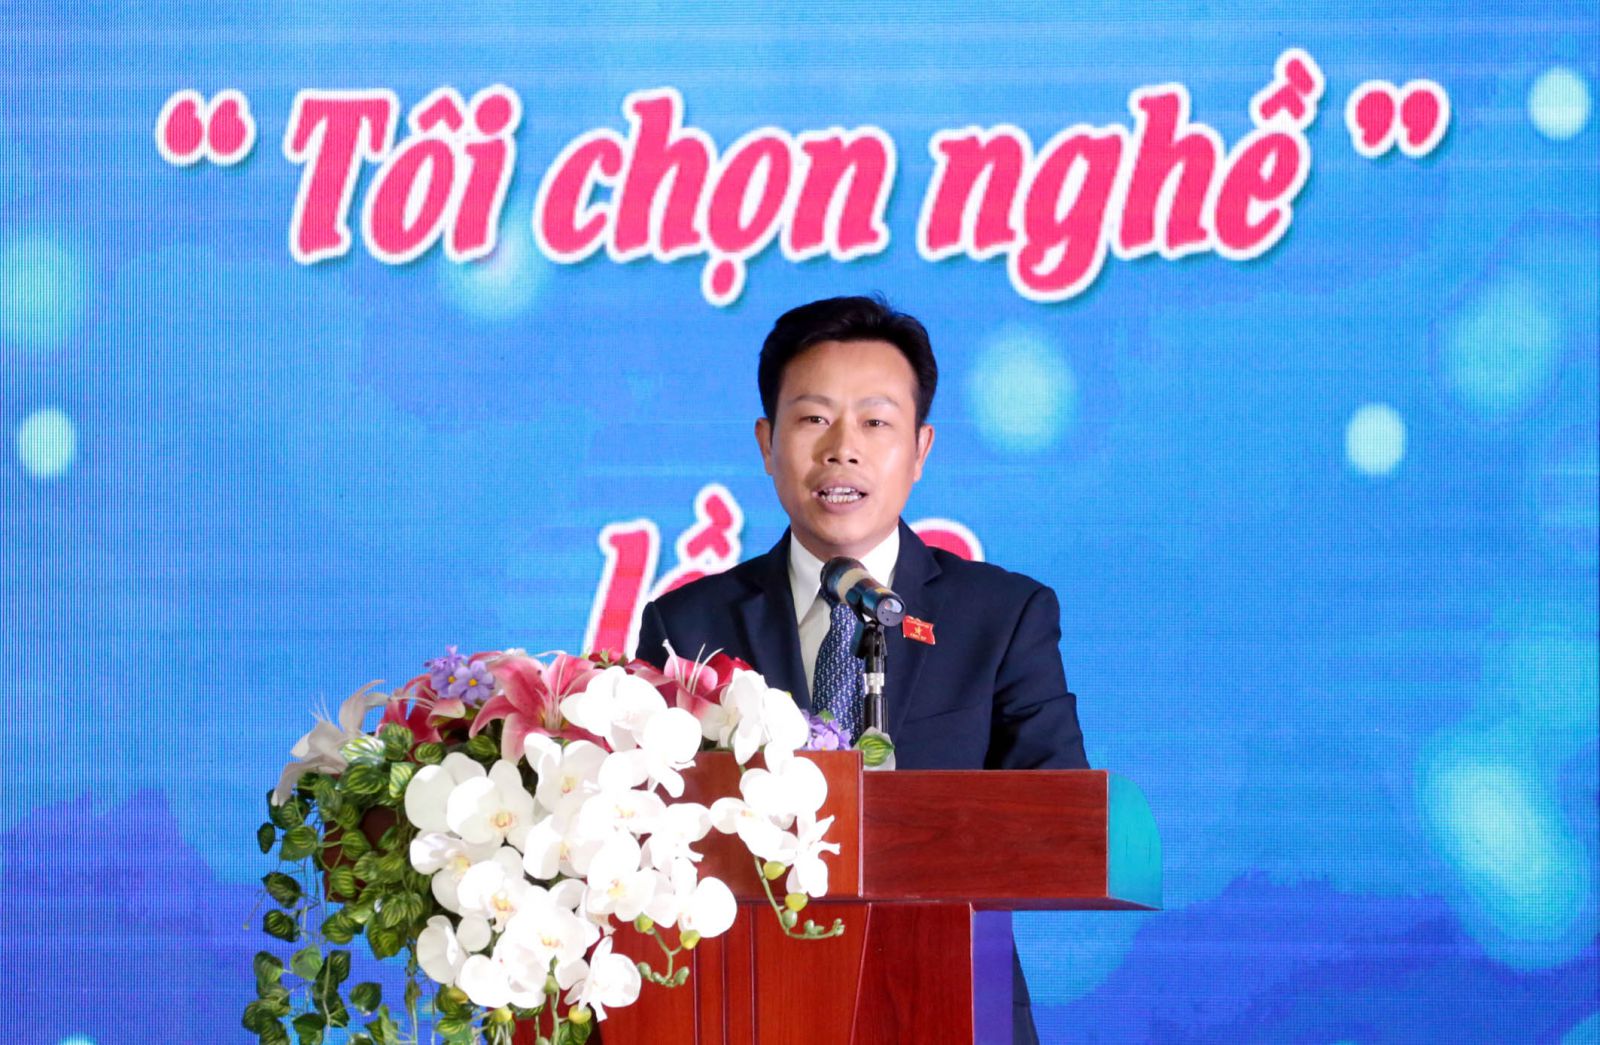 Ông Lê Quân phát biểu tại một sự kiện ở Trường CĐ truyền hình gần đây.